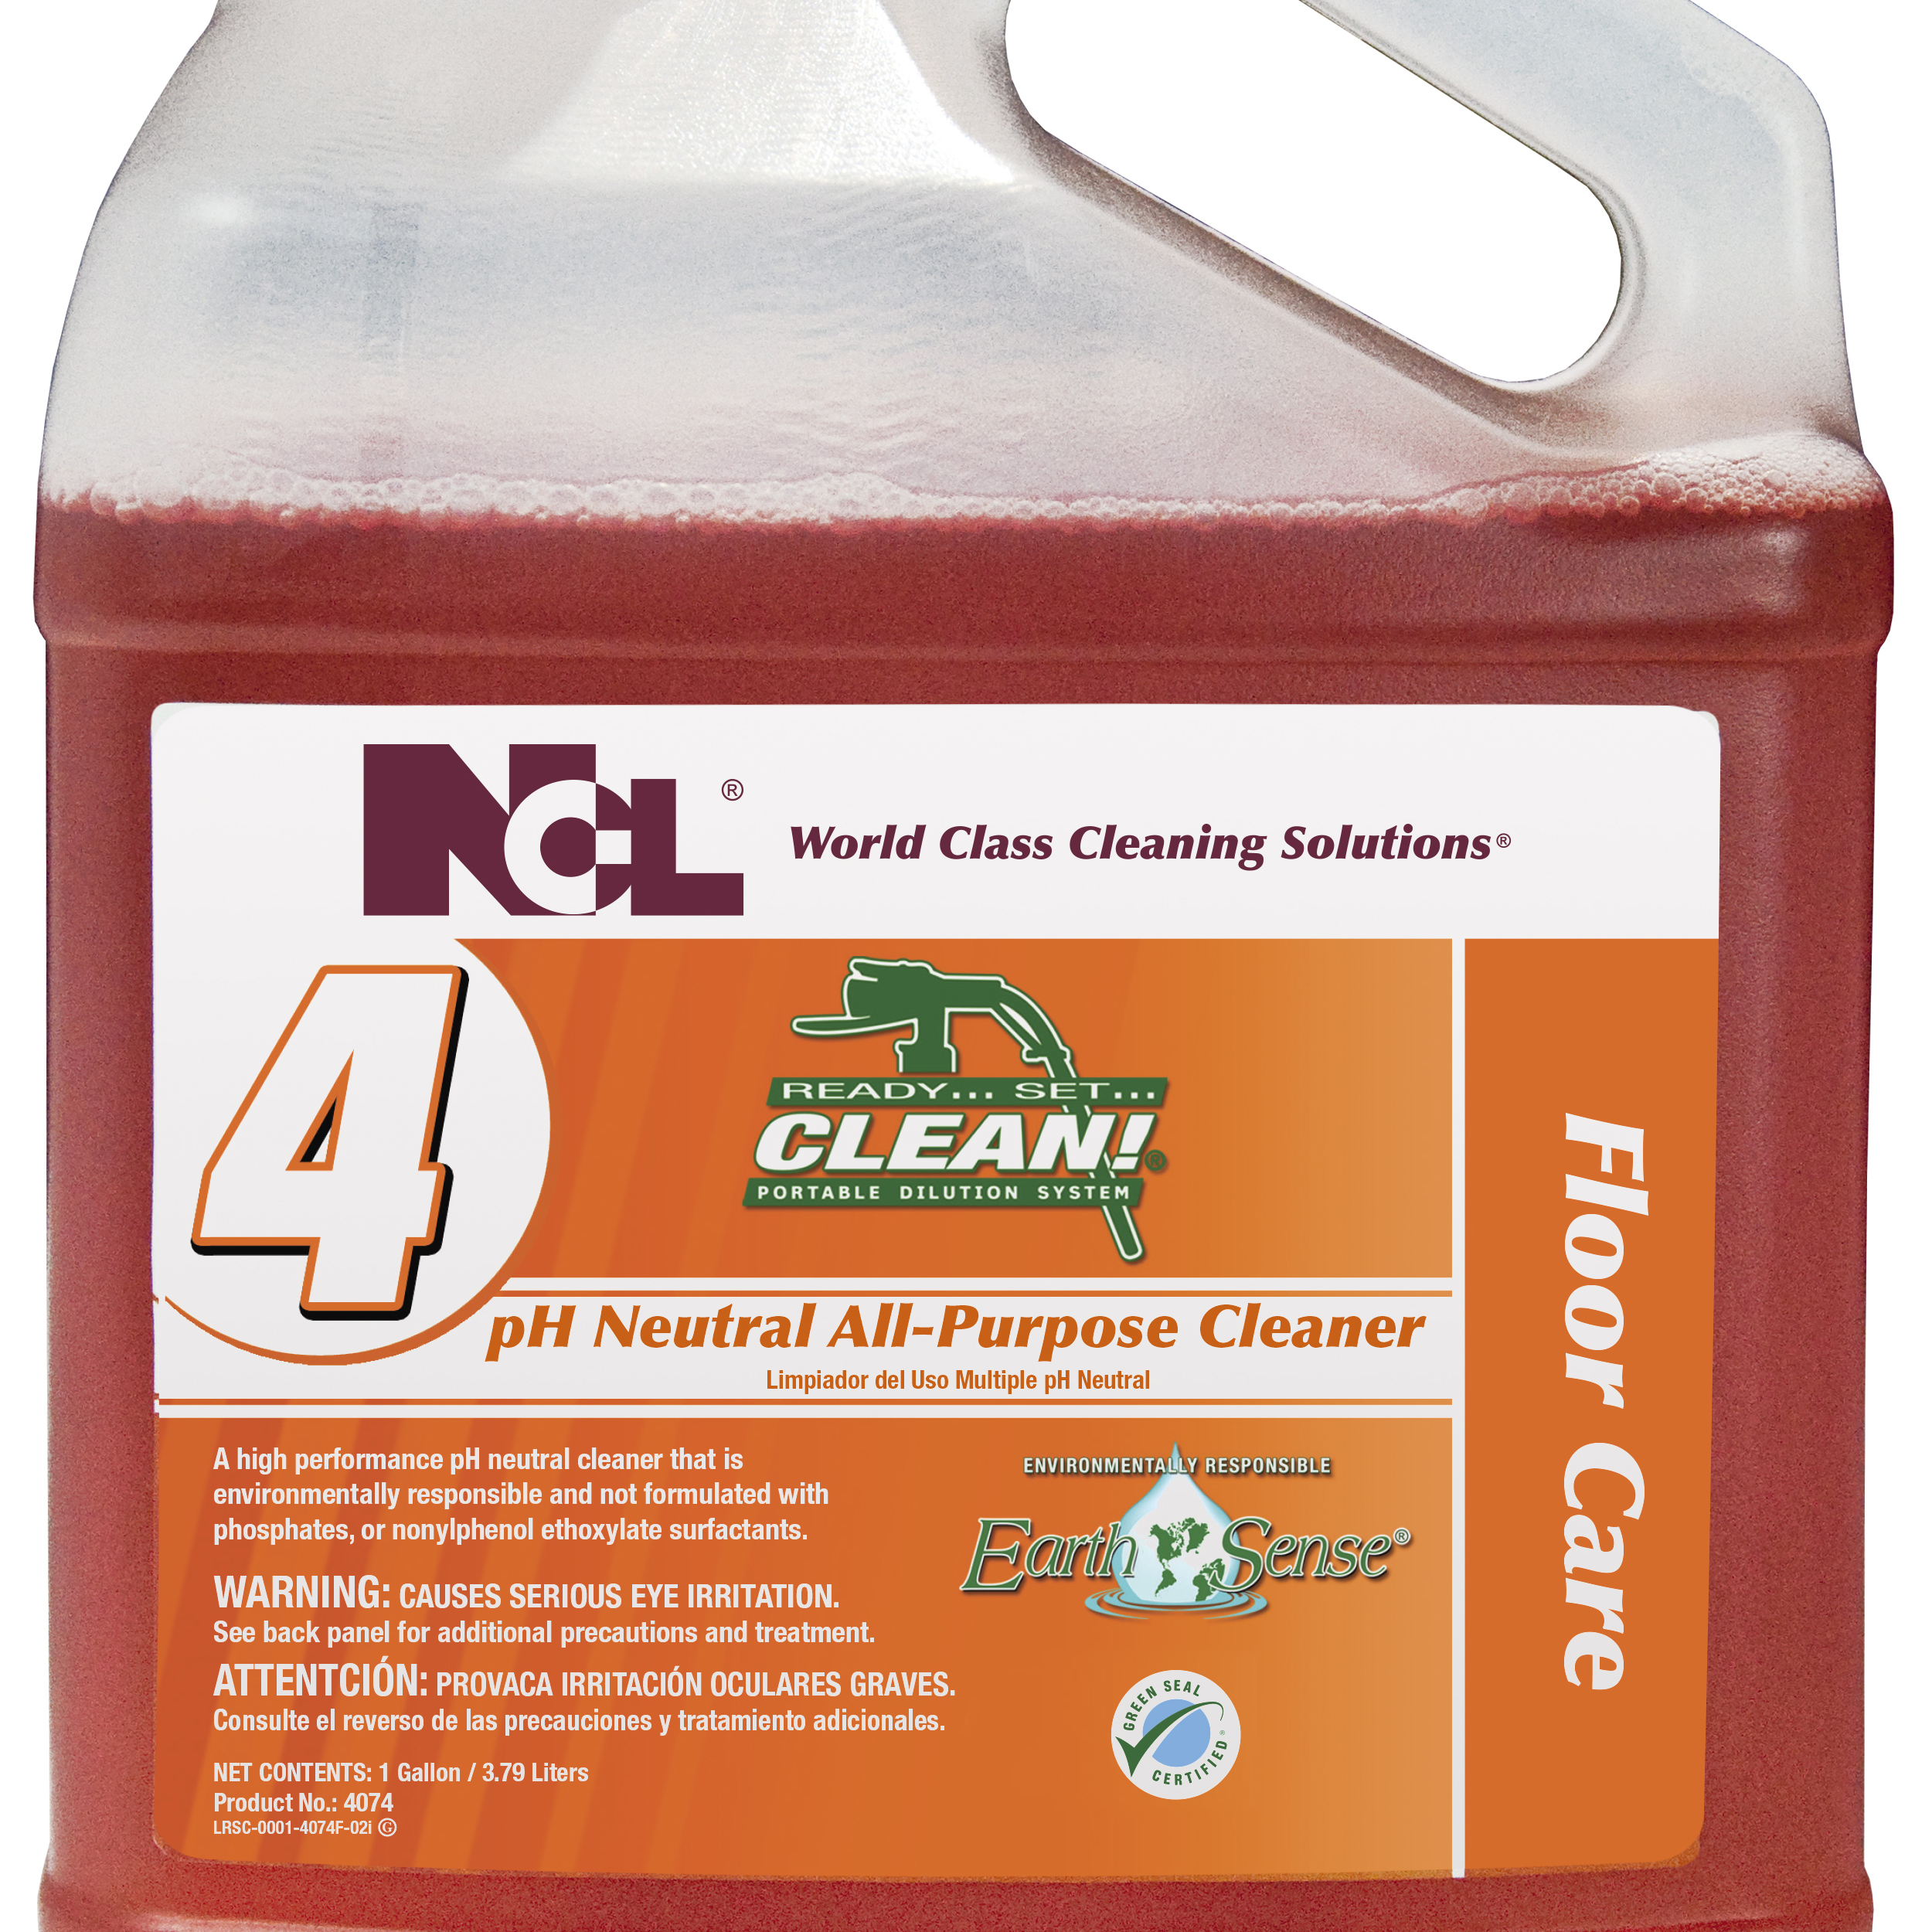  RSC #4 Earth Sense pH Neutral All Purpose Cleaner 4/1 RSC Gal. Case (NCL4074-35) 